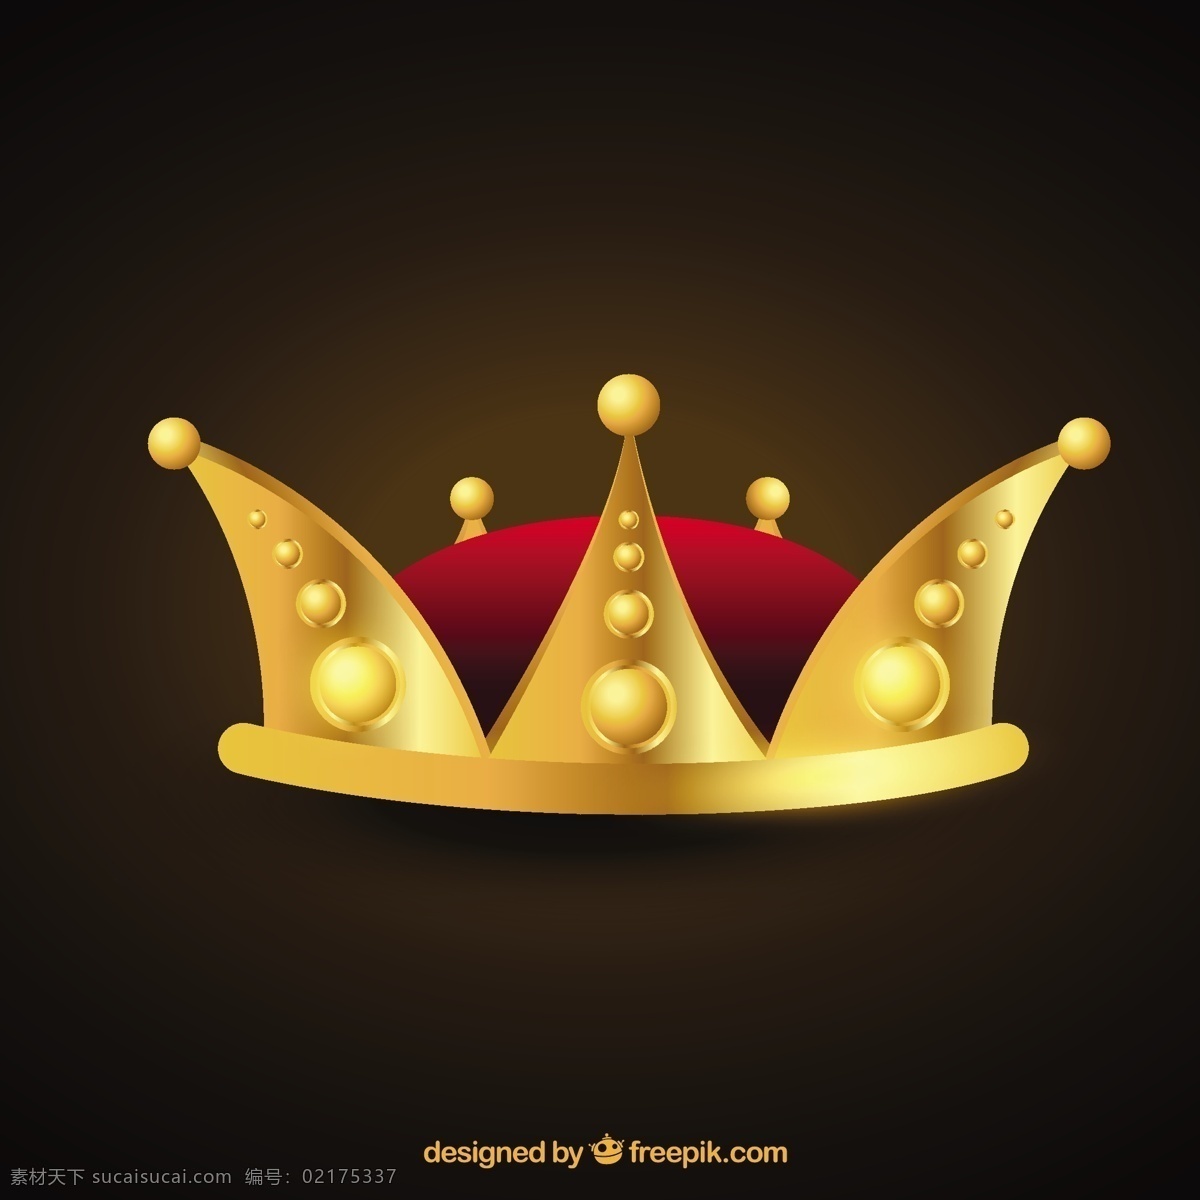 国王的皇冠 皇冠 黄金 国王 王后 珠宝 王国 黑色